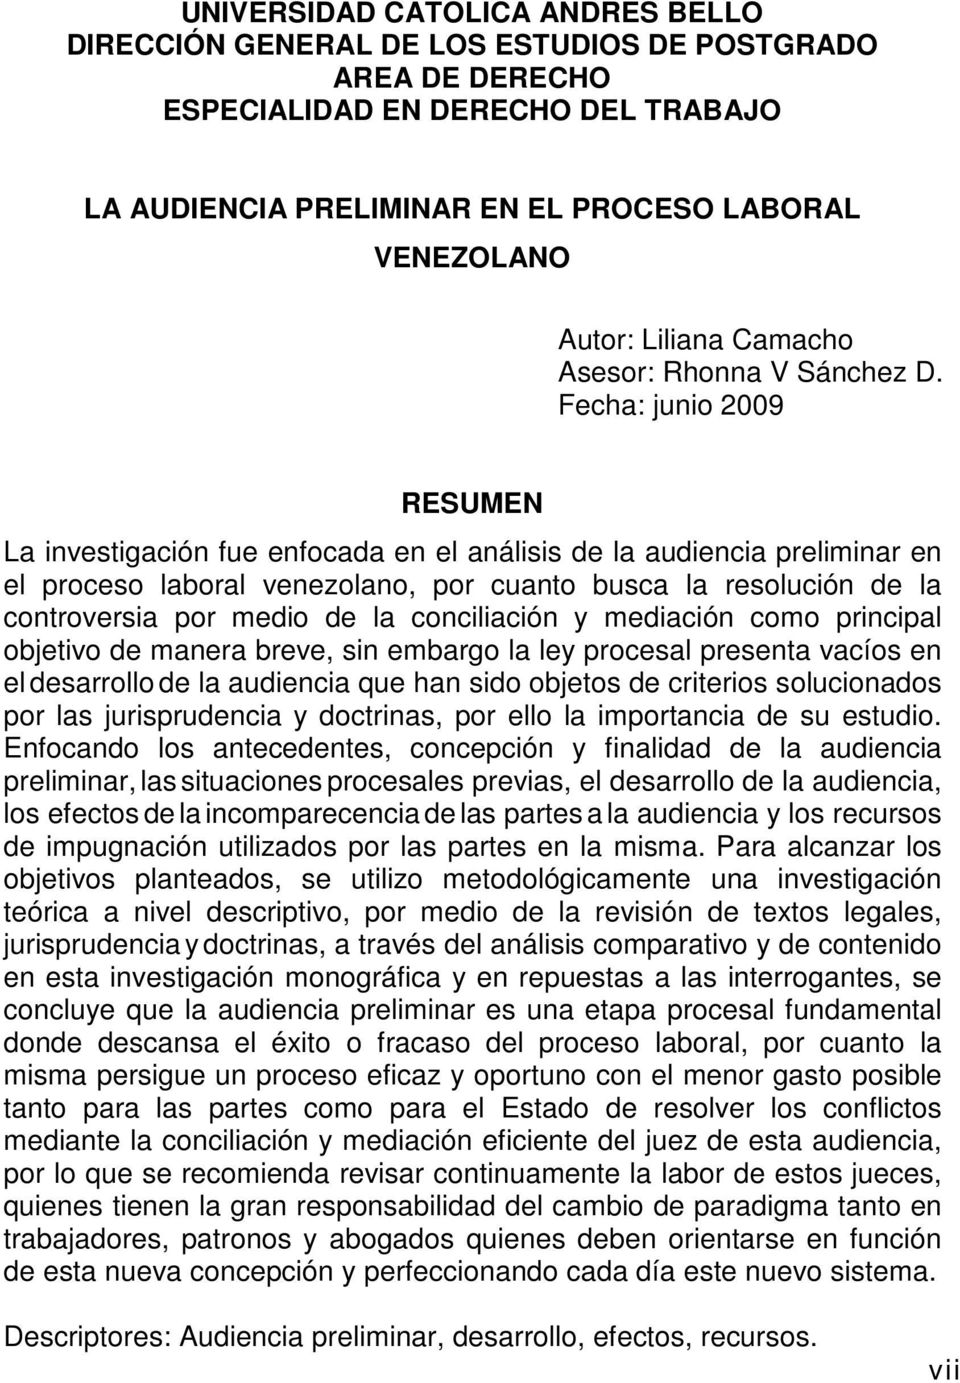 Fecha: junio 2009 RESUMEN La investigación fue enfocada en el análisis de la audiencia preliminar en el proceso laboral venezolano, por cuanto busca la resolución de la controversia por medio de la